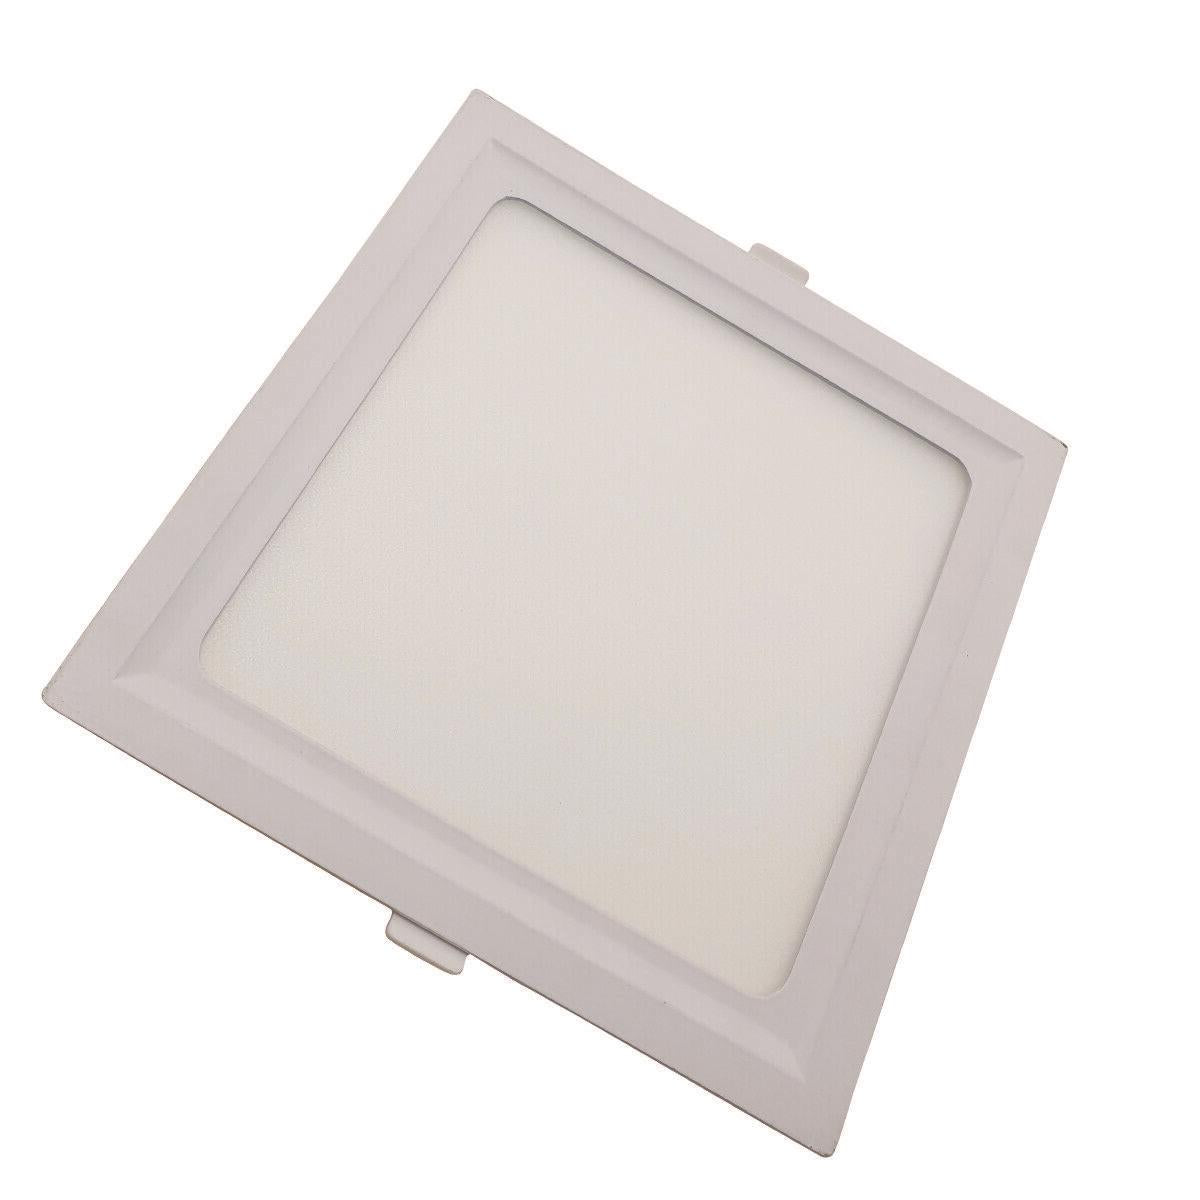 LED Ceiling Lights Slim Square Panel Down Light Livingroom Kitchen Bathroom UK~1436 - LEDSone UK Ltd